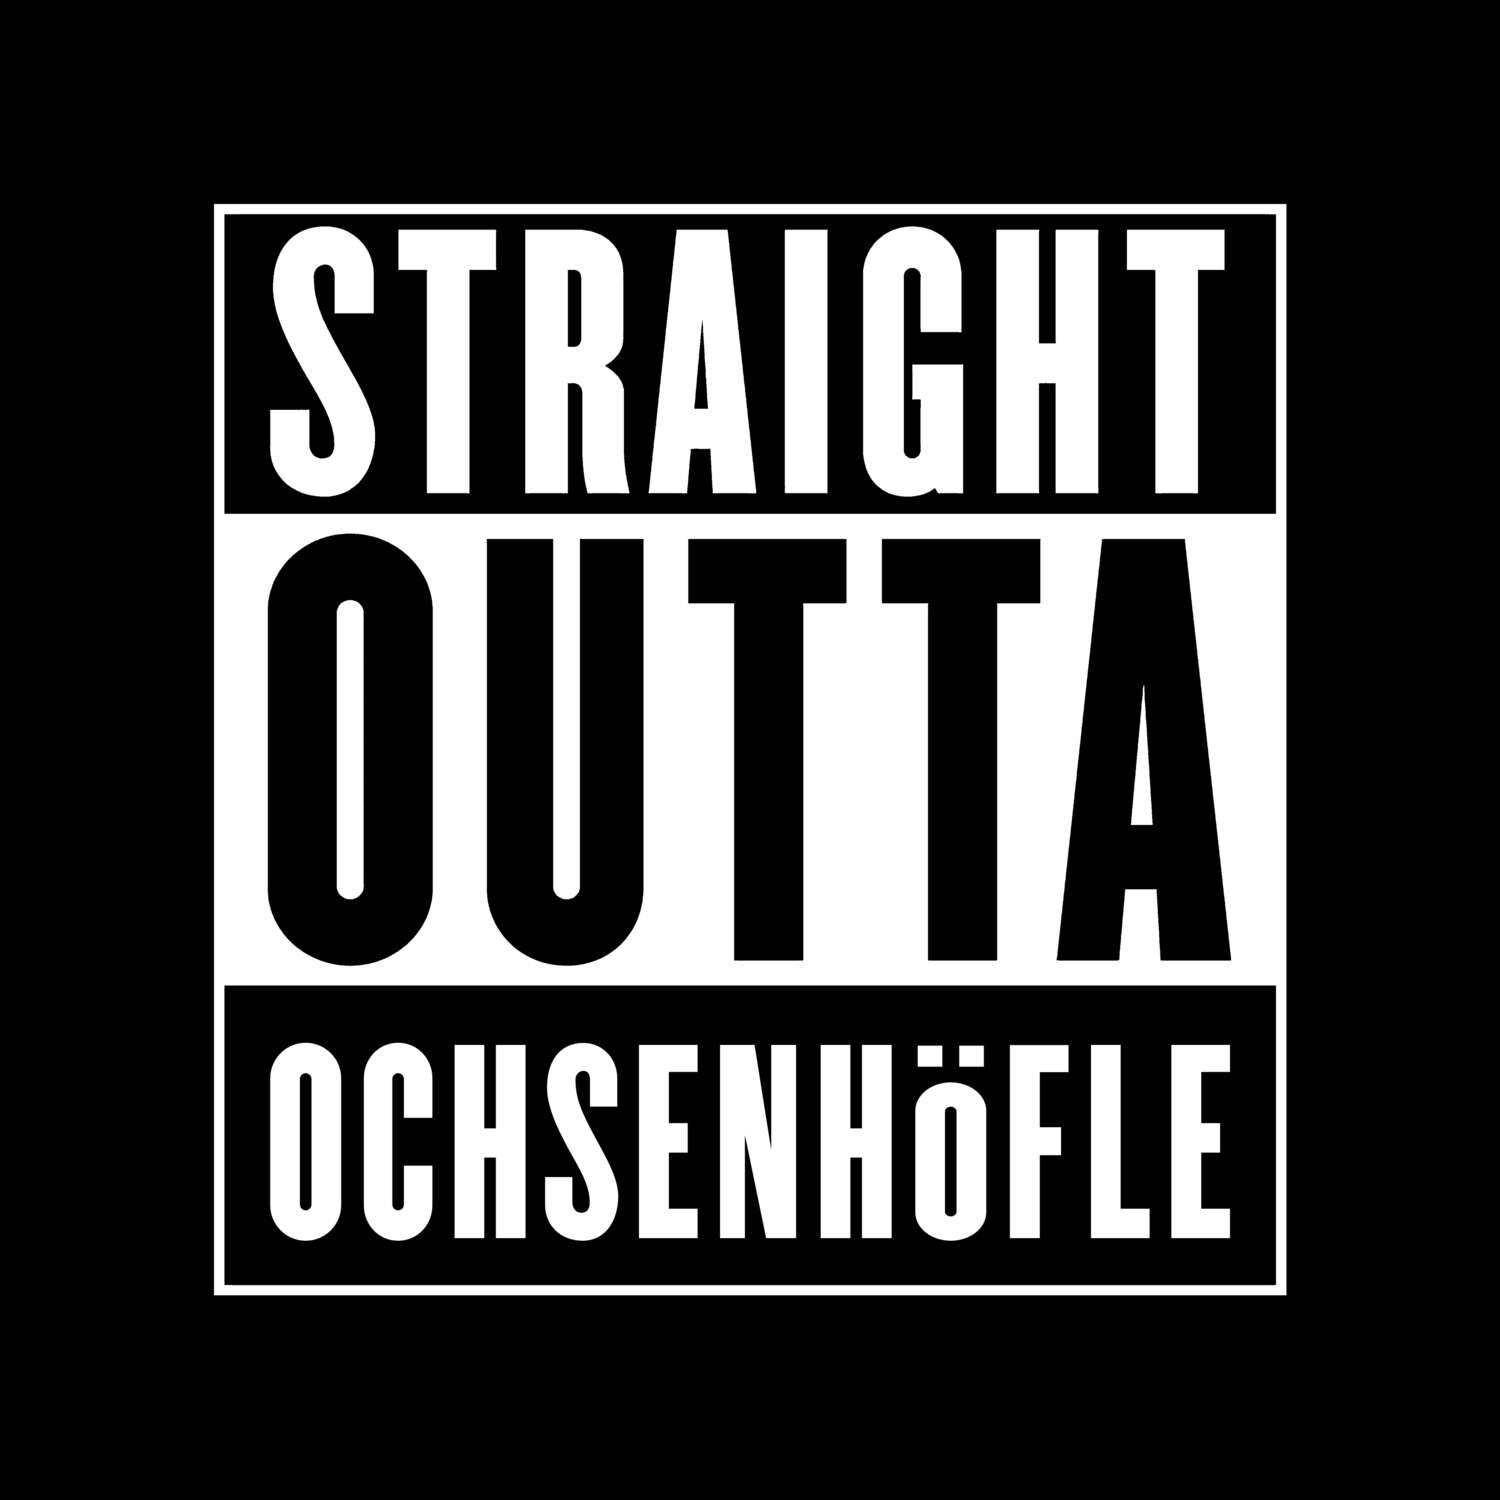 Ochsenhöfle T-Shirt »Straight Outta«